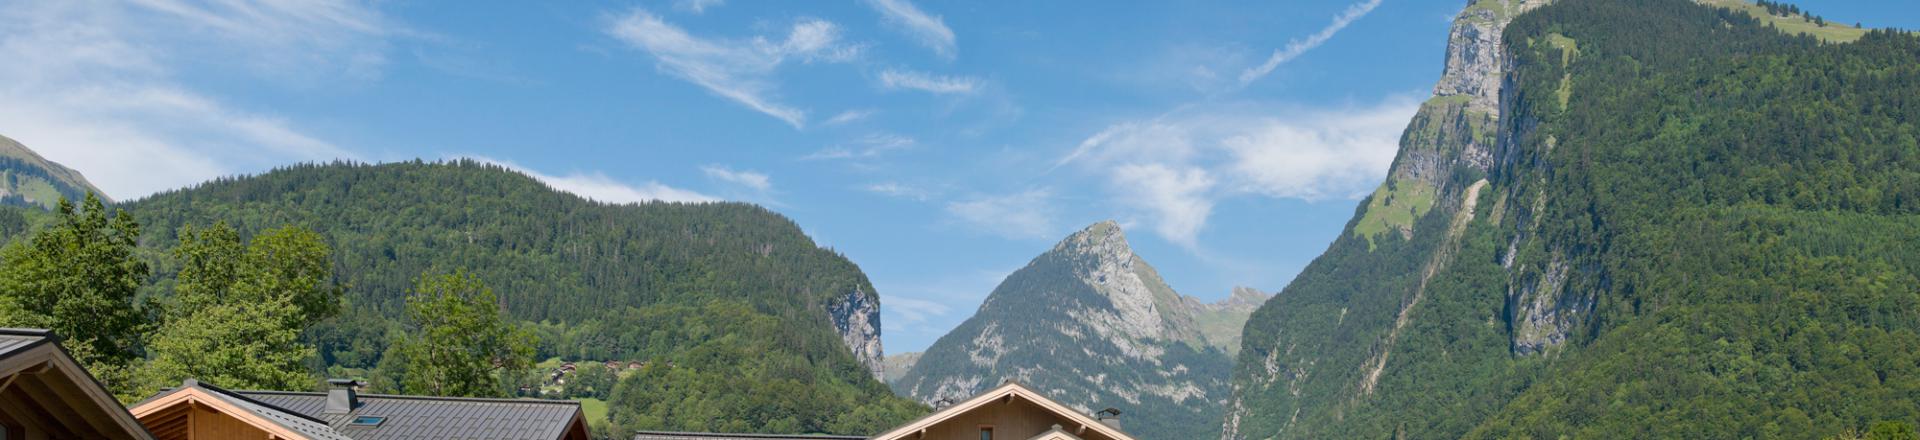 Каникулы в горах Résidence la Reine des Prés - Samoëns - летом под открытым небом